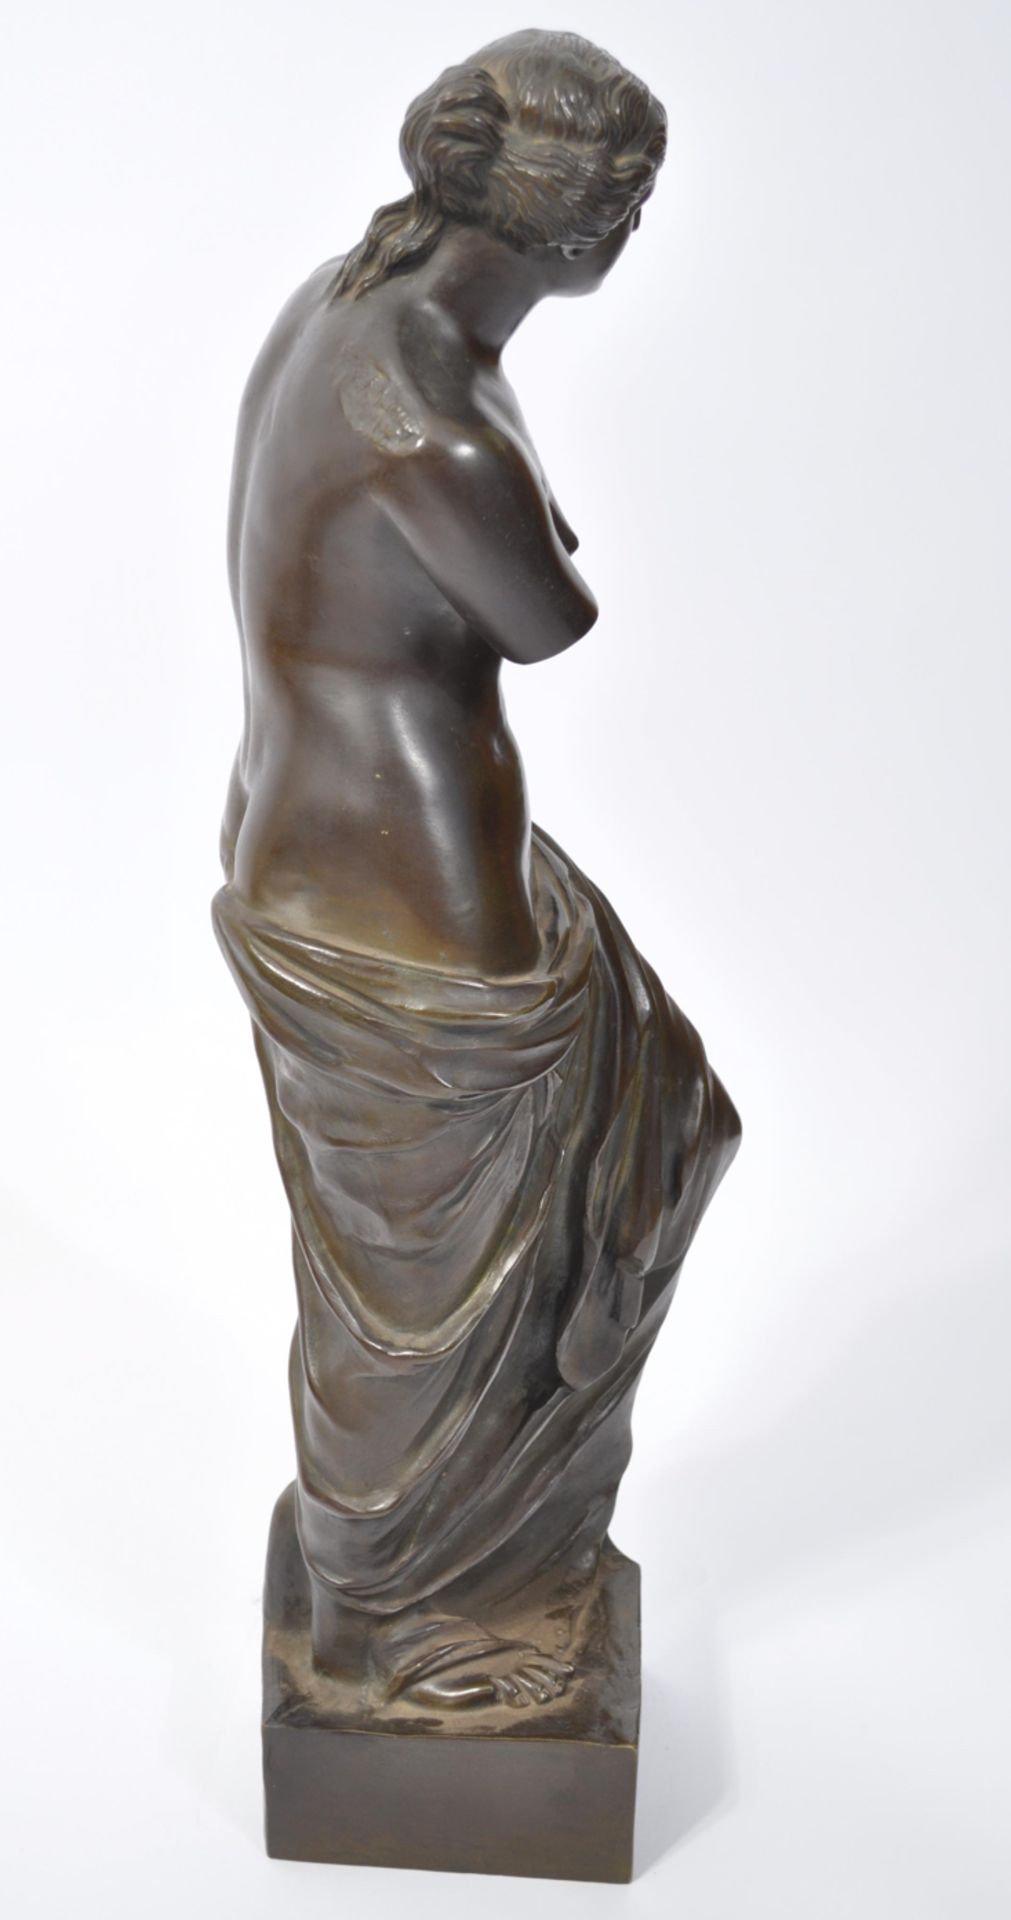 Large C19th bronze of Venice de Milo 65 cms tall - Image 5 of 5